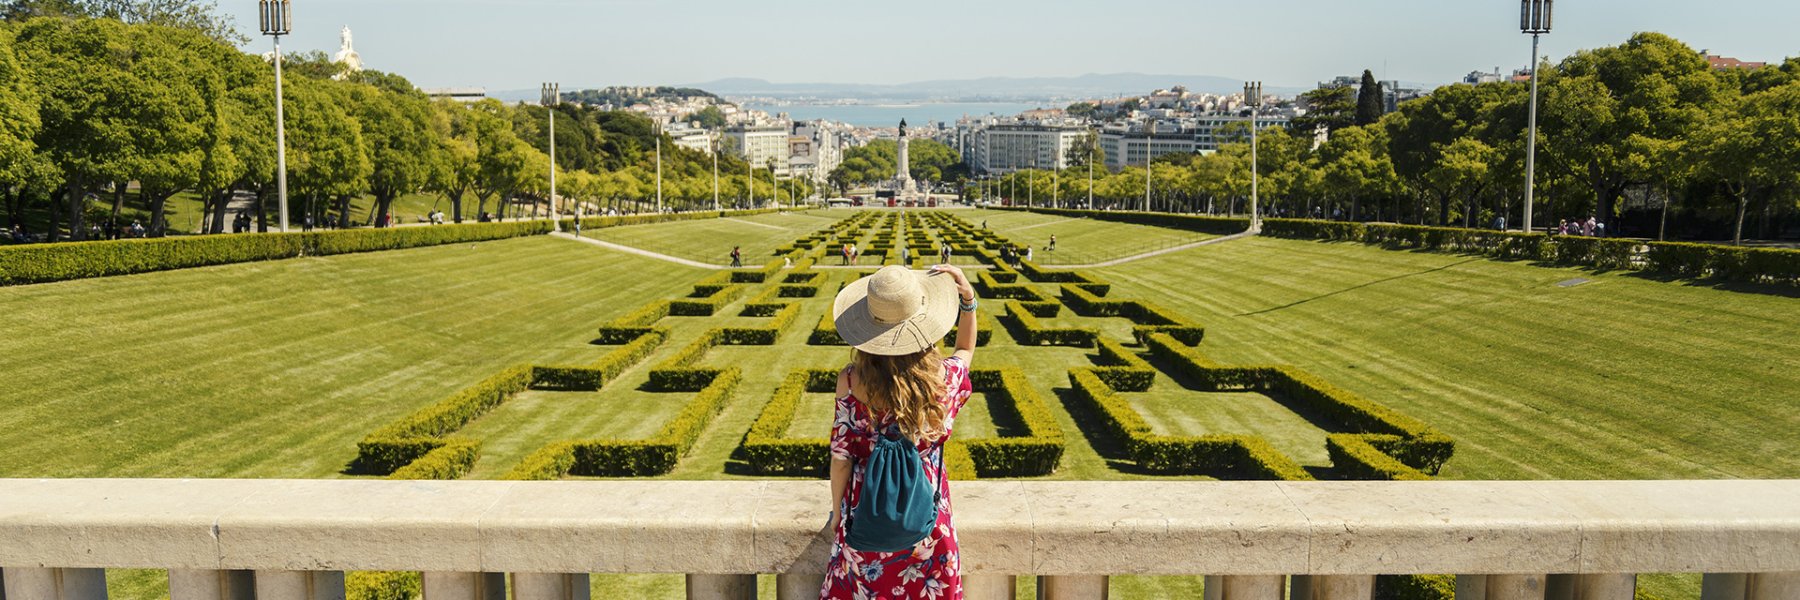 Luxuriöse Ferienhäuser in Portugal